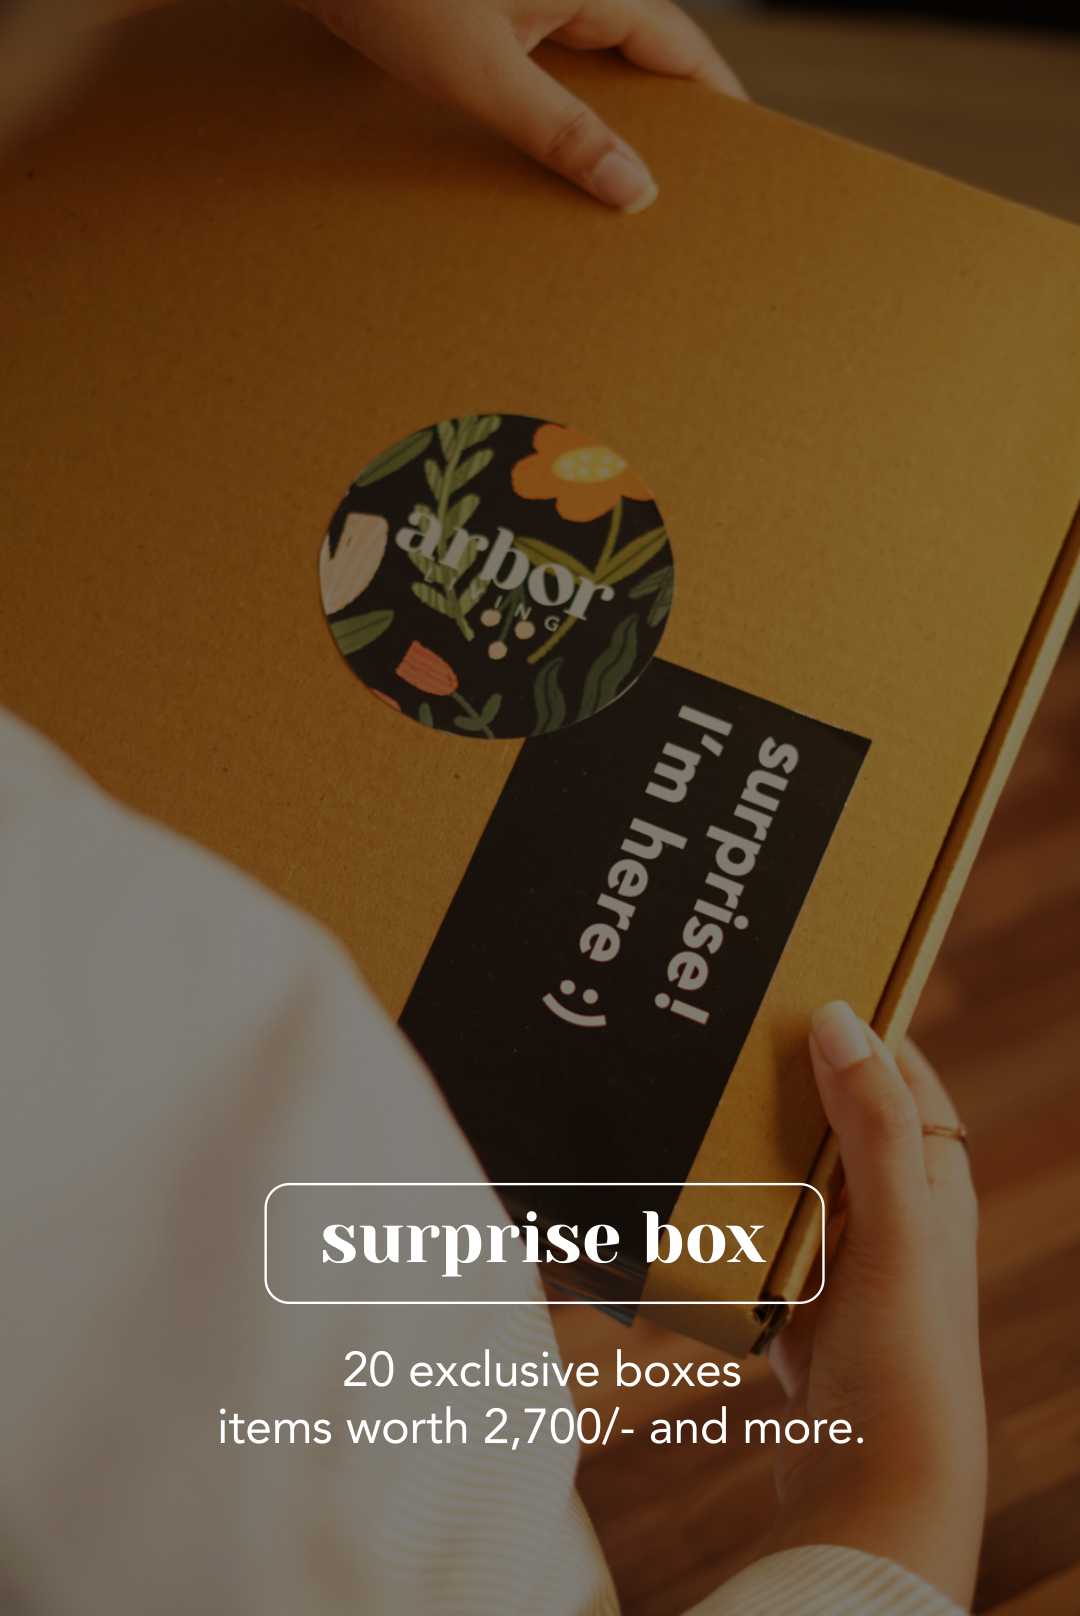 SURPRISE BOX